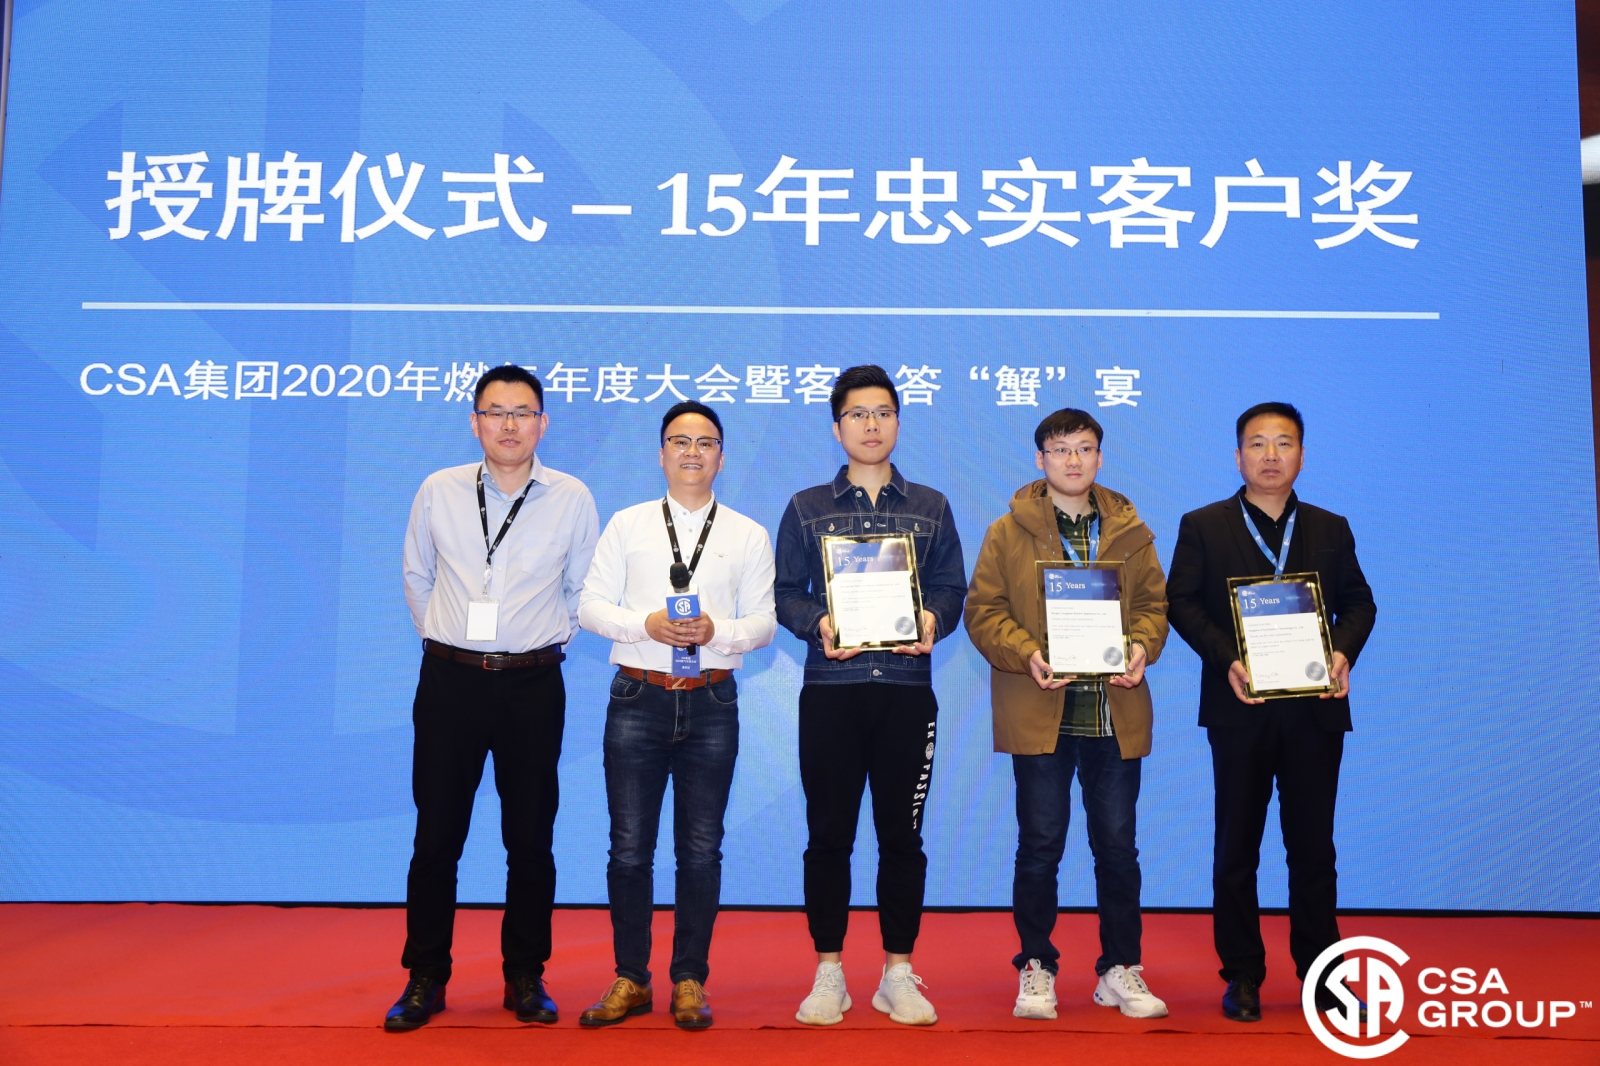 Déi jährlech Konferenz vun de CSA Gas Clienten gouf zu Kunshan ofgehalen